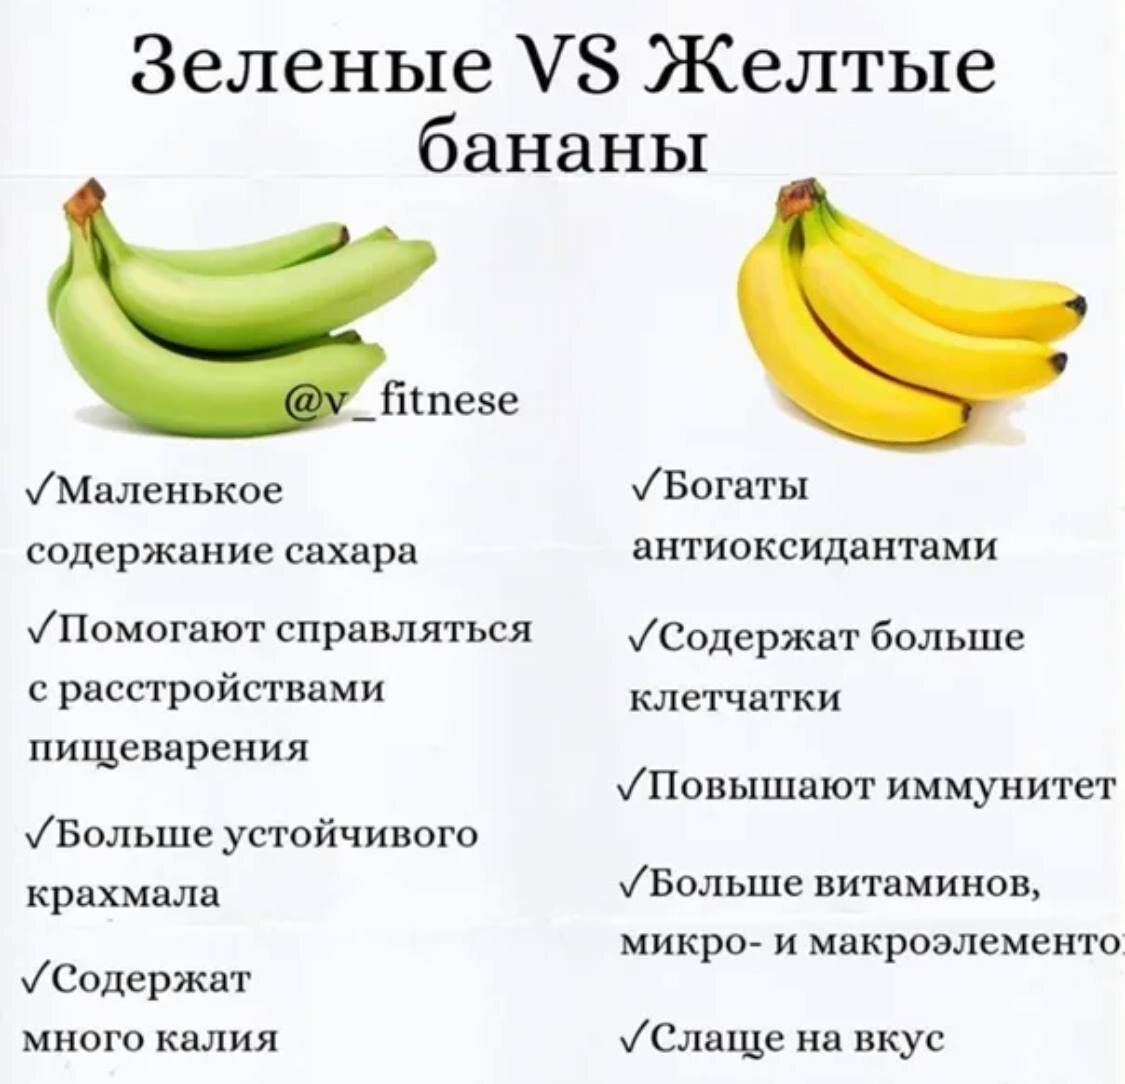 Бананы польза и вред для мужчин. Какие бананы полезно есть. Калорийность зеленых бананов. Чем полезны зеленые бананы. Какие бананы полезнее есть.